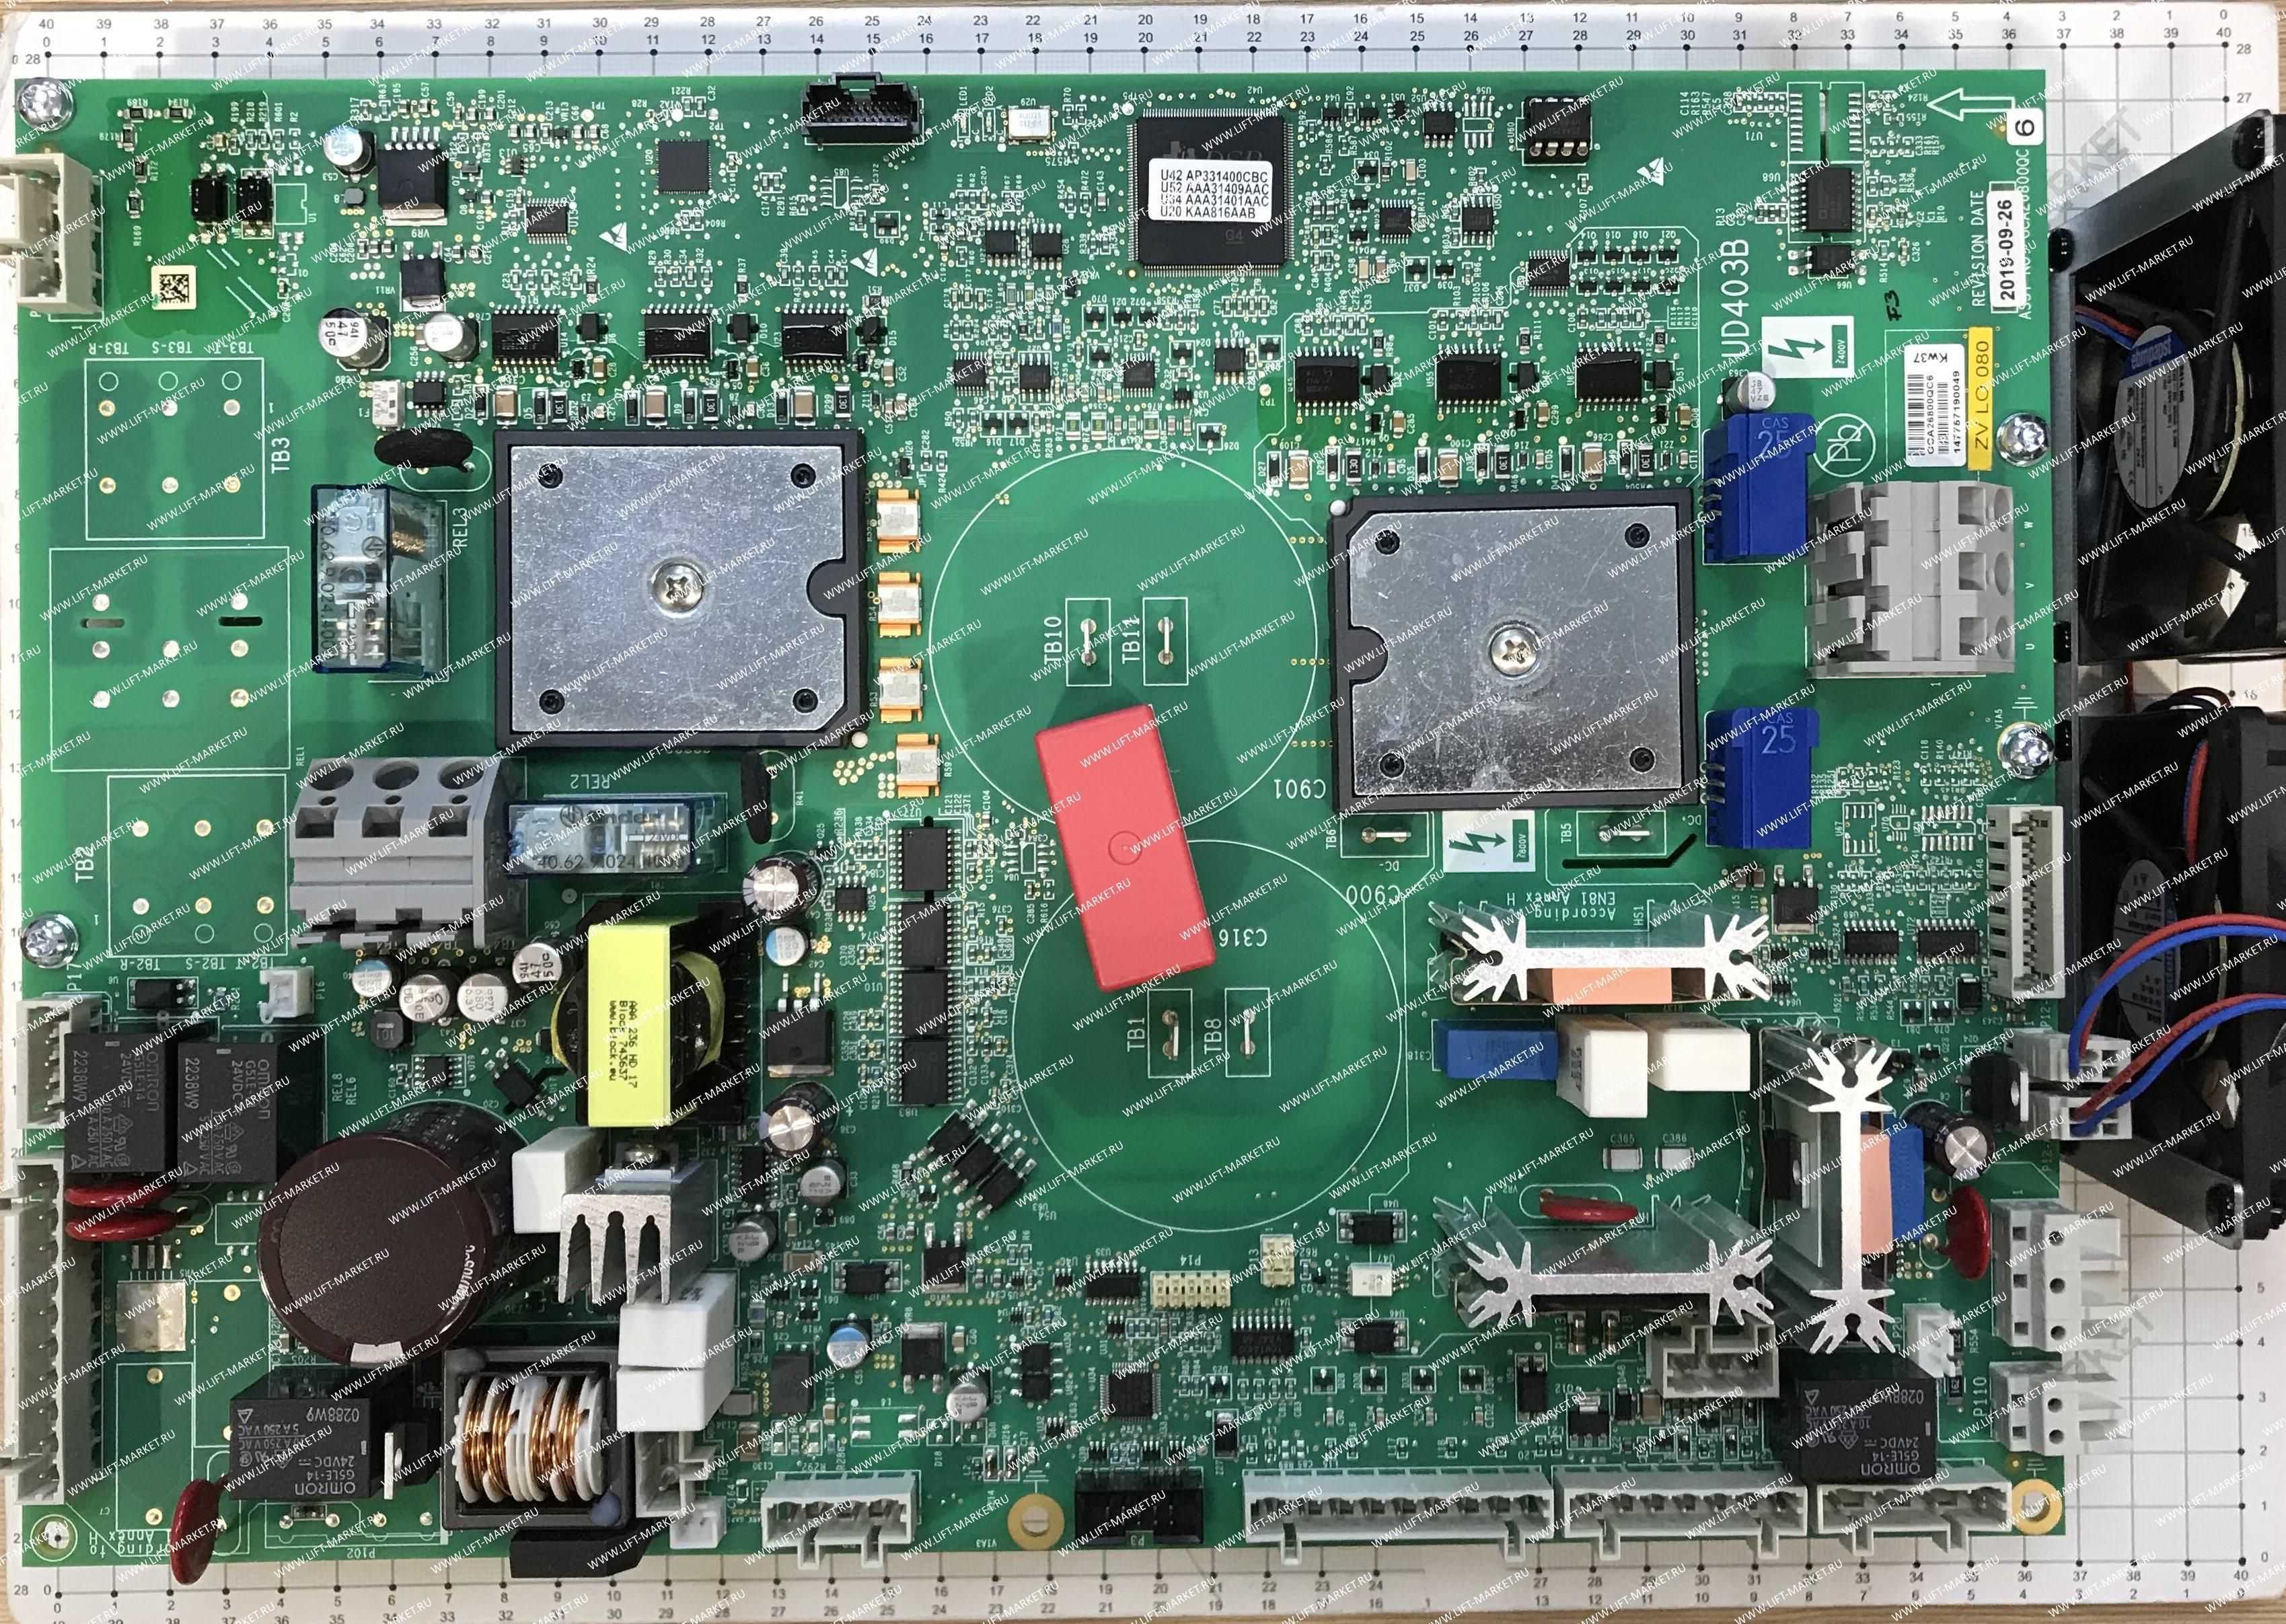 Плата частотного преобразователя GAA21305WS20 (замена для GBA26800QC6) 15 кВт  OTIS GIEN (ОТИС), Фра фото